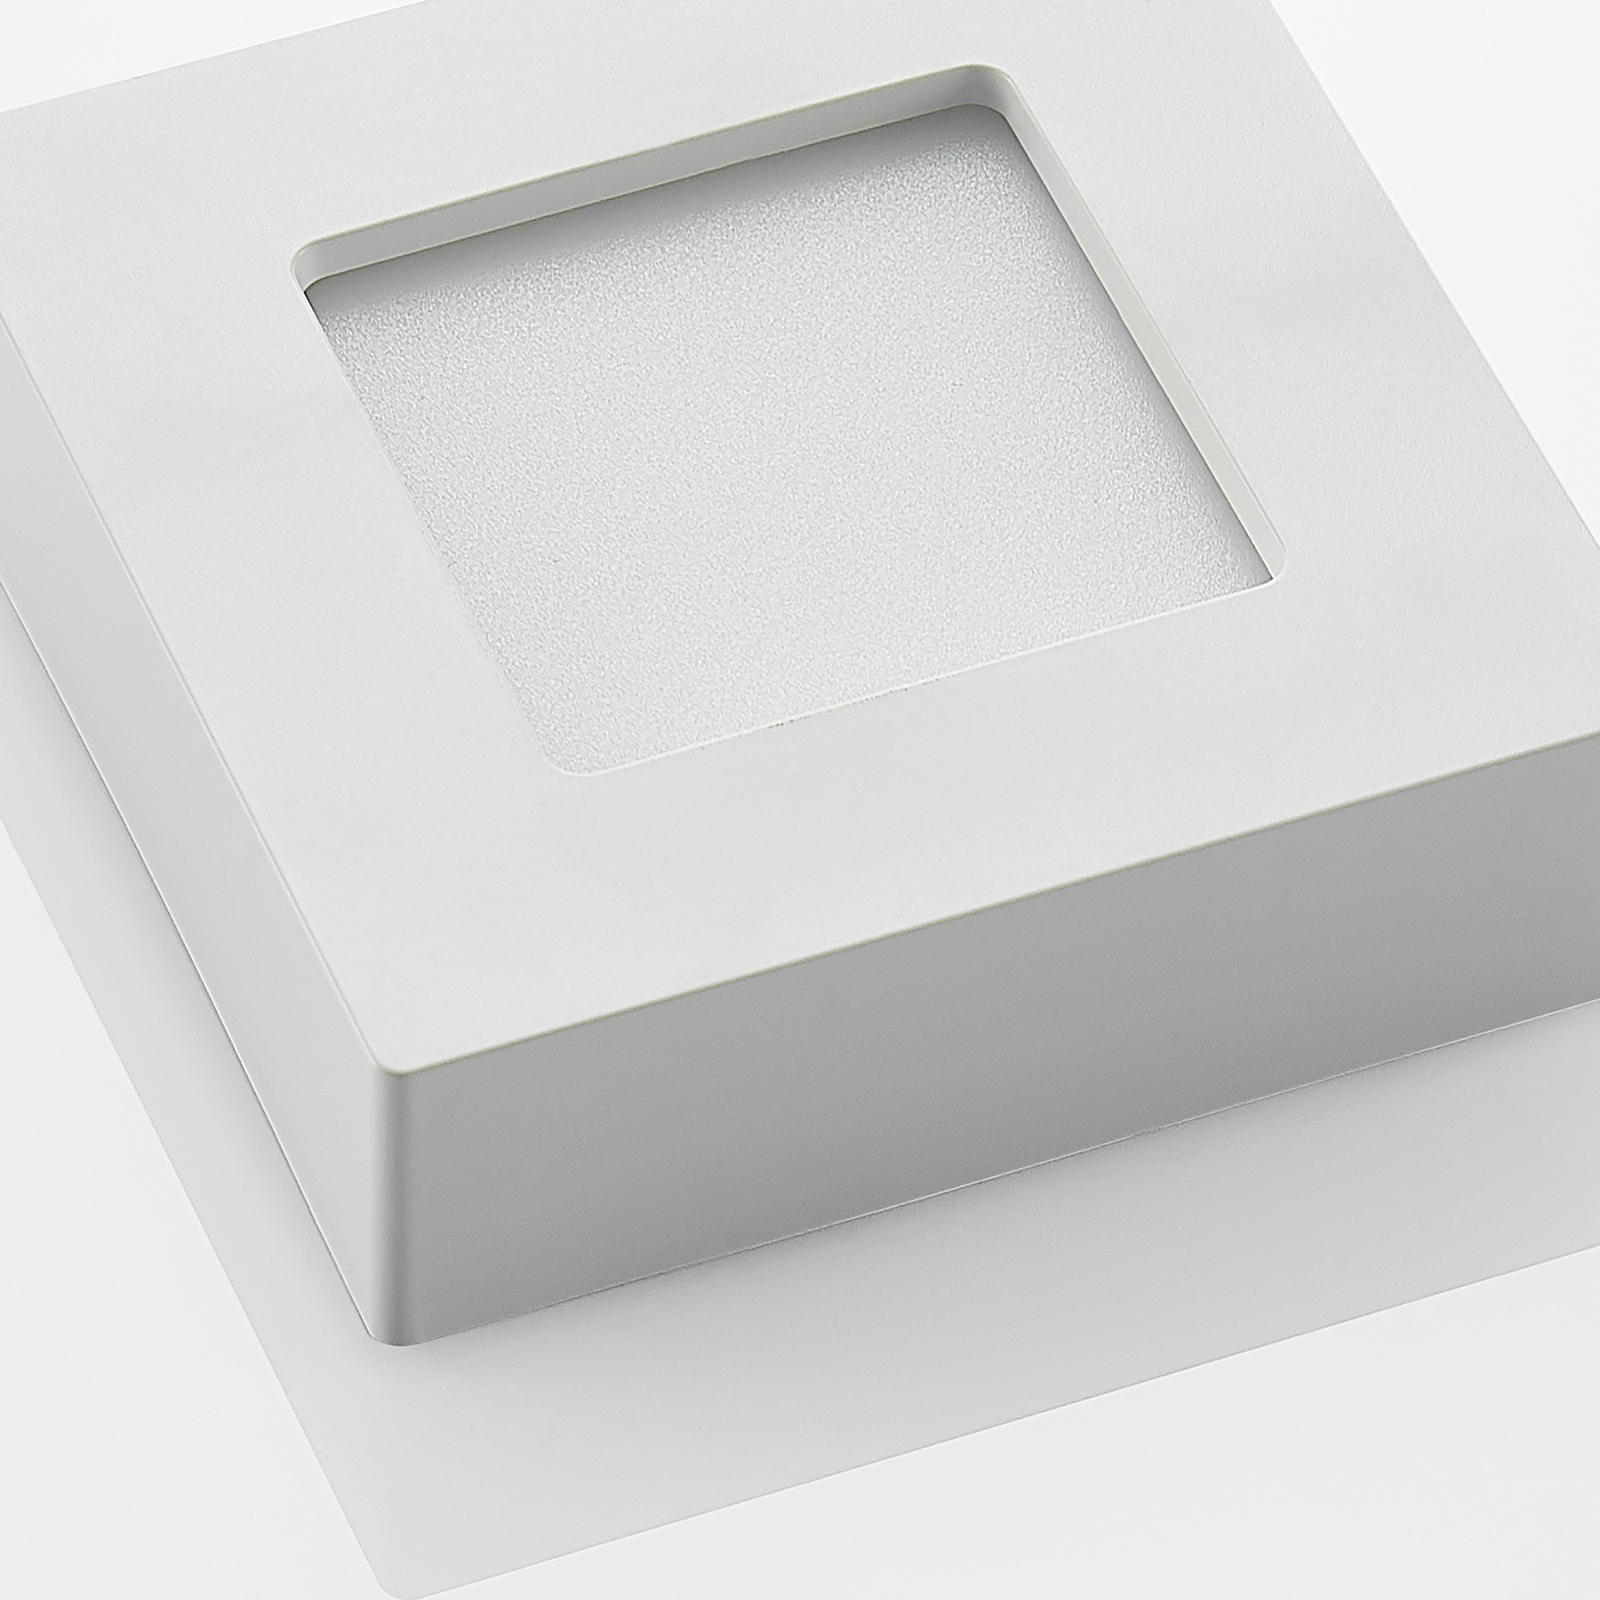 Prios Alette LED mennyezeti lámpa, fehér, 12,2 cm